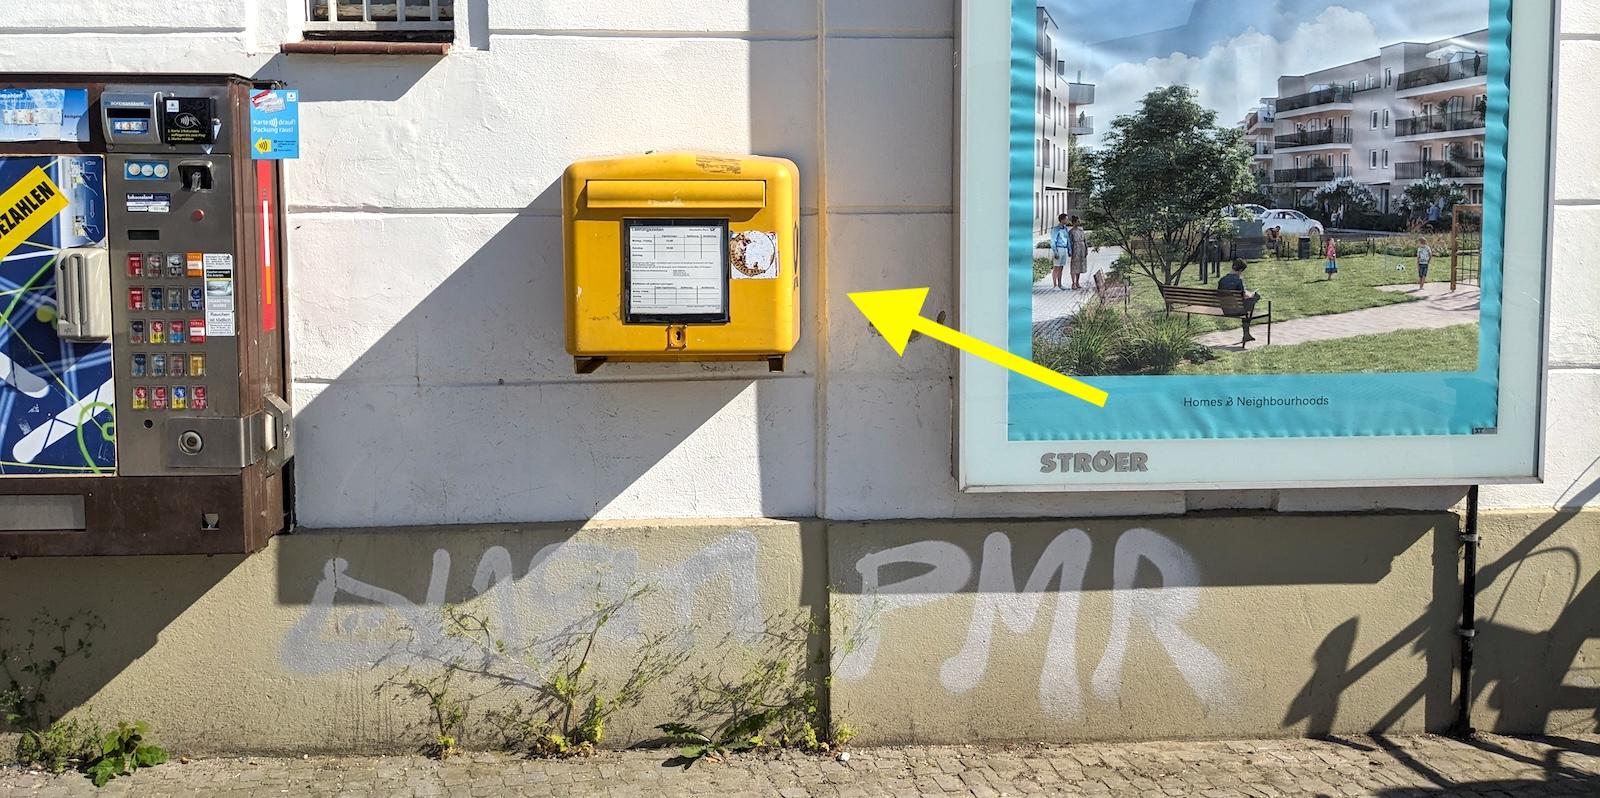 A yellow Deutsche Post mailbox